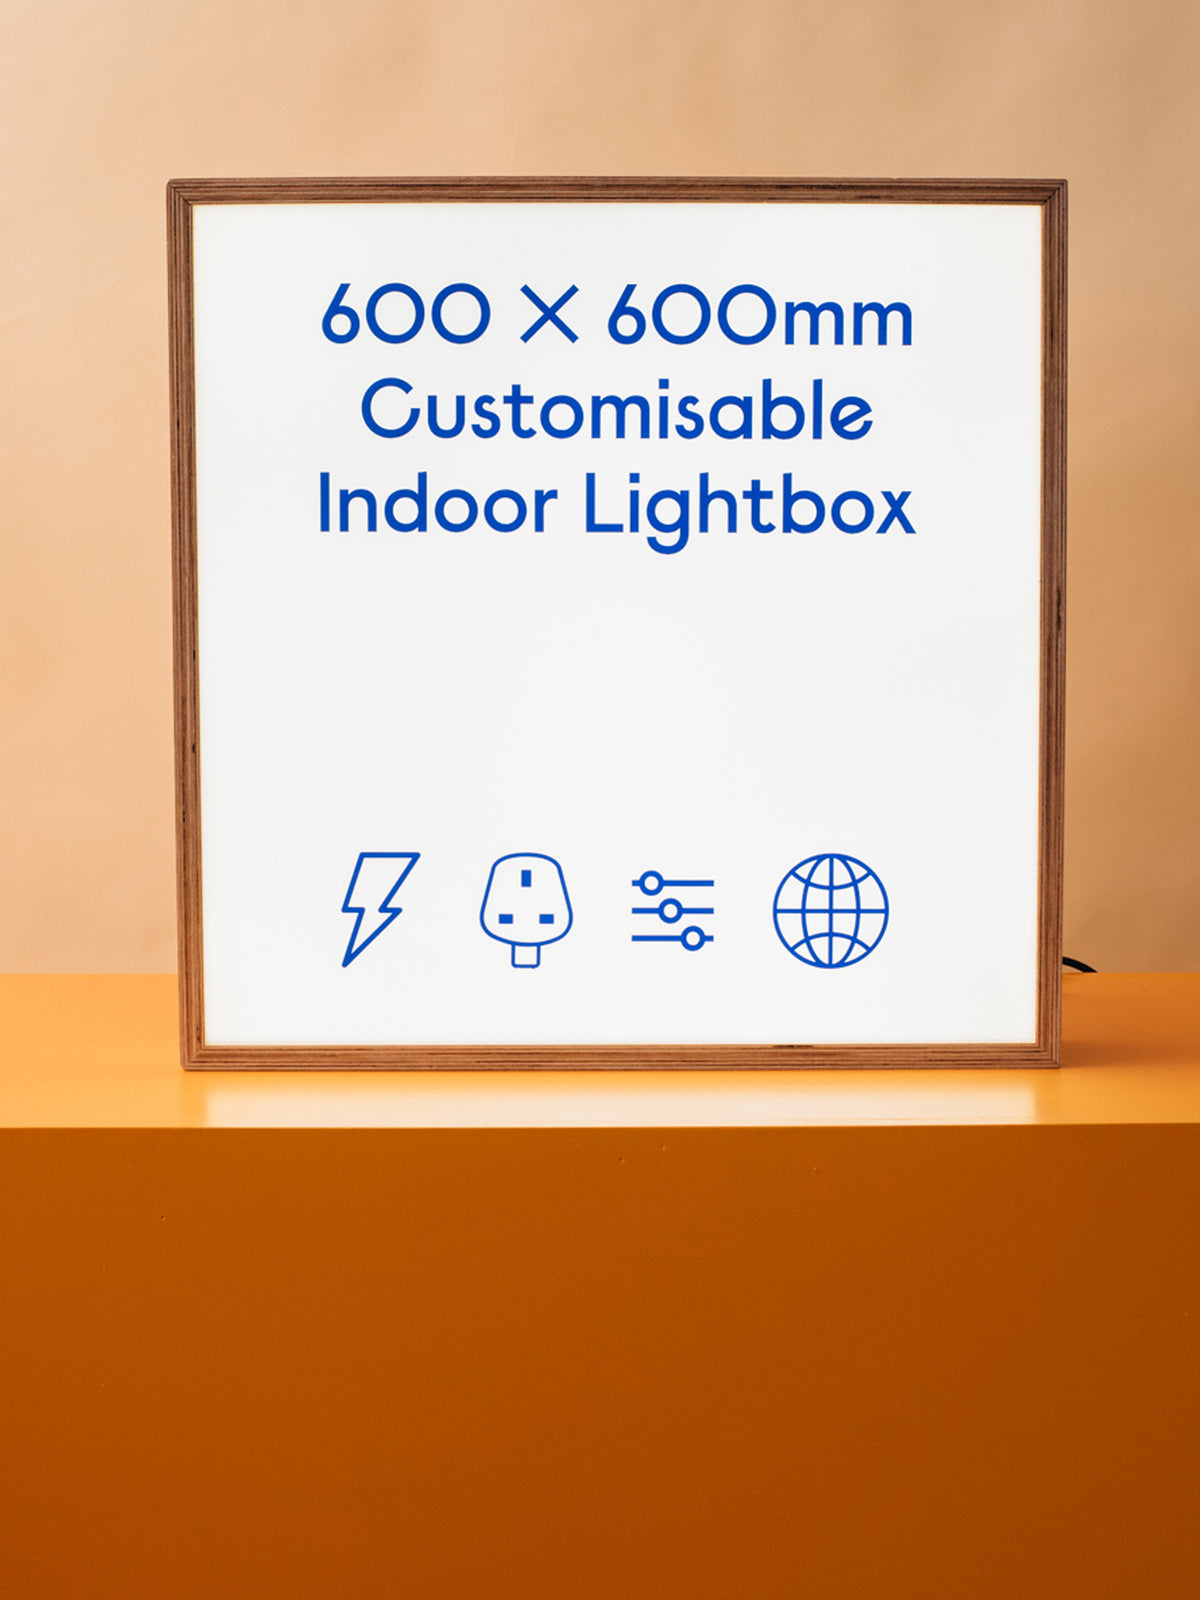 600 x 600mm Indoor Lightbox